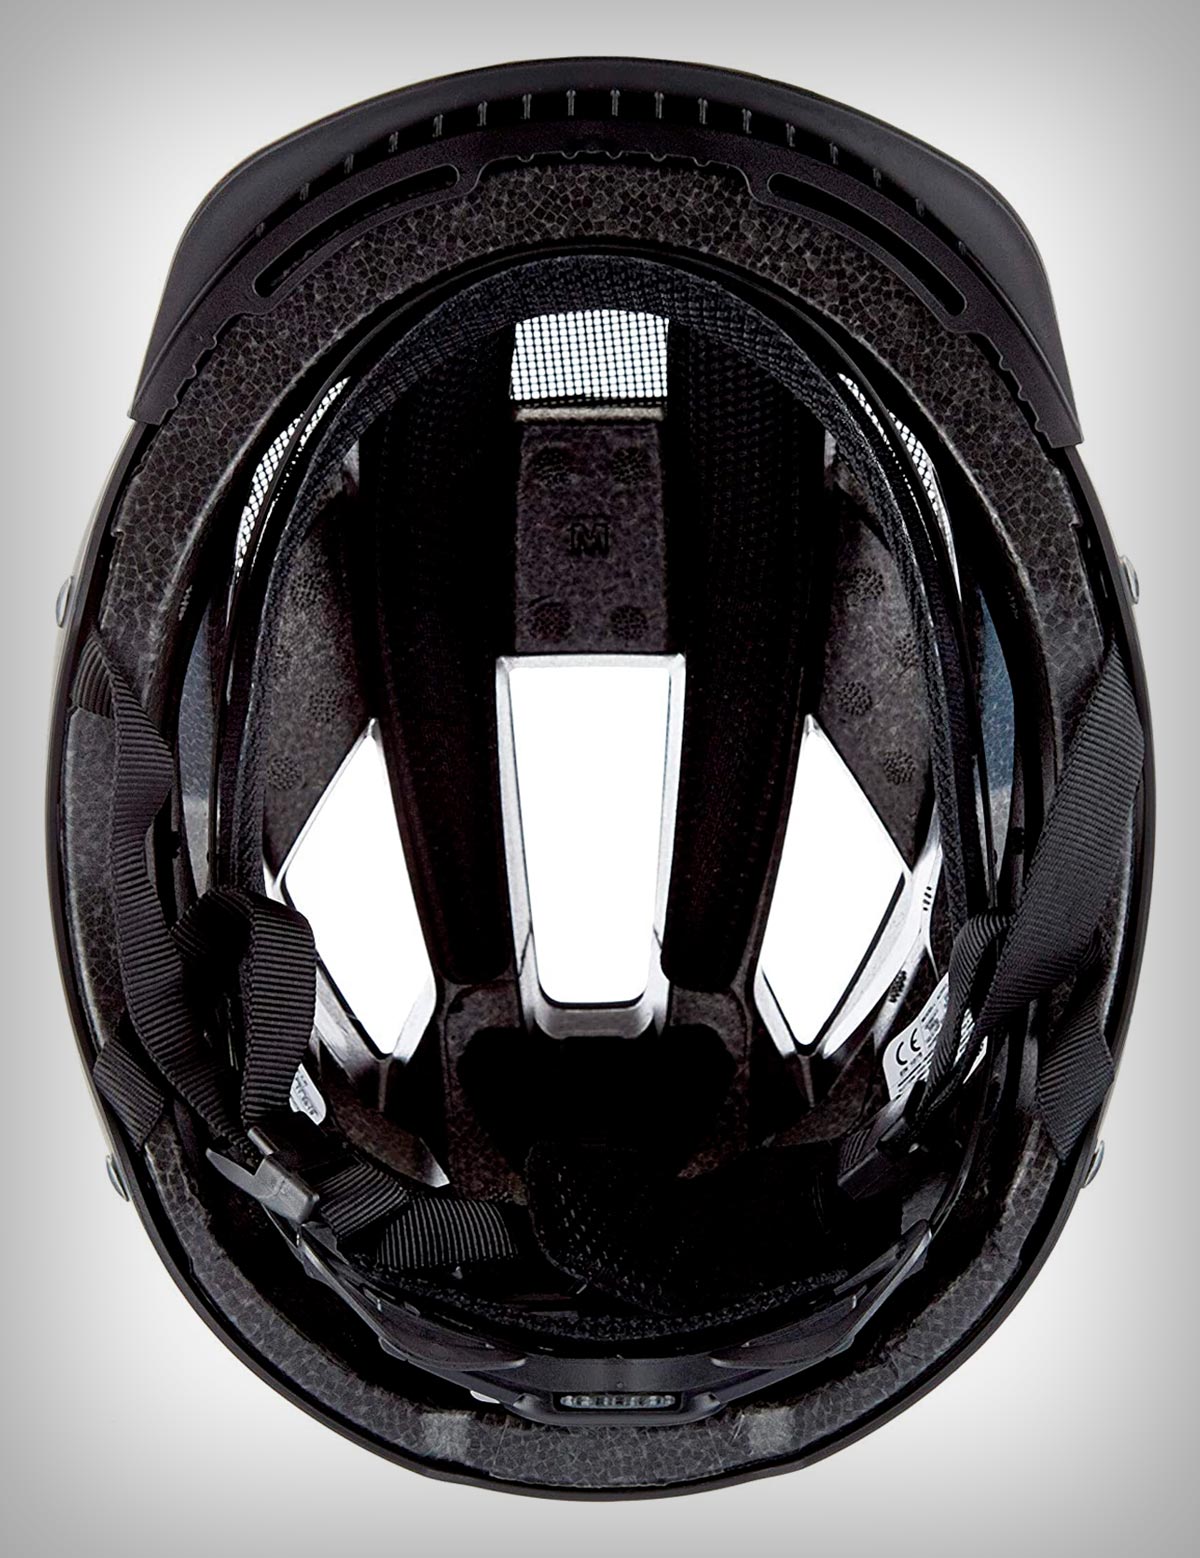 Cazando ofertas: un casco de uso polivalente con iluminación LED integrada, el Abus Hyban 2.0, a un precio irresistible